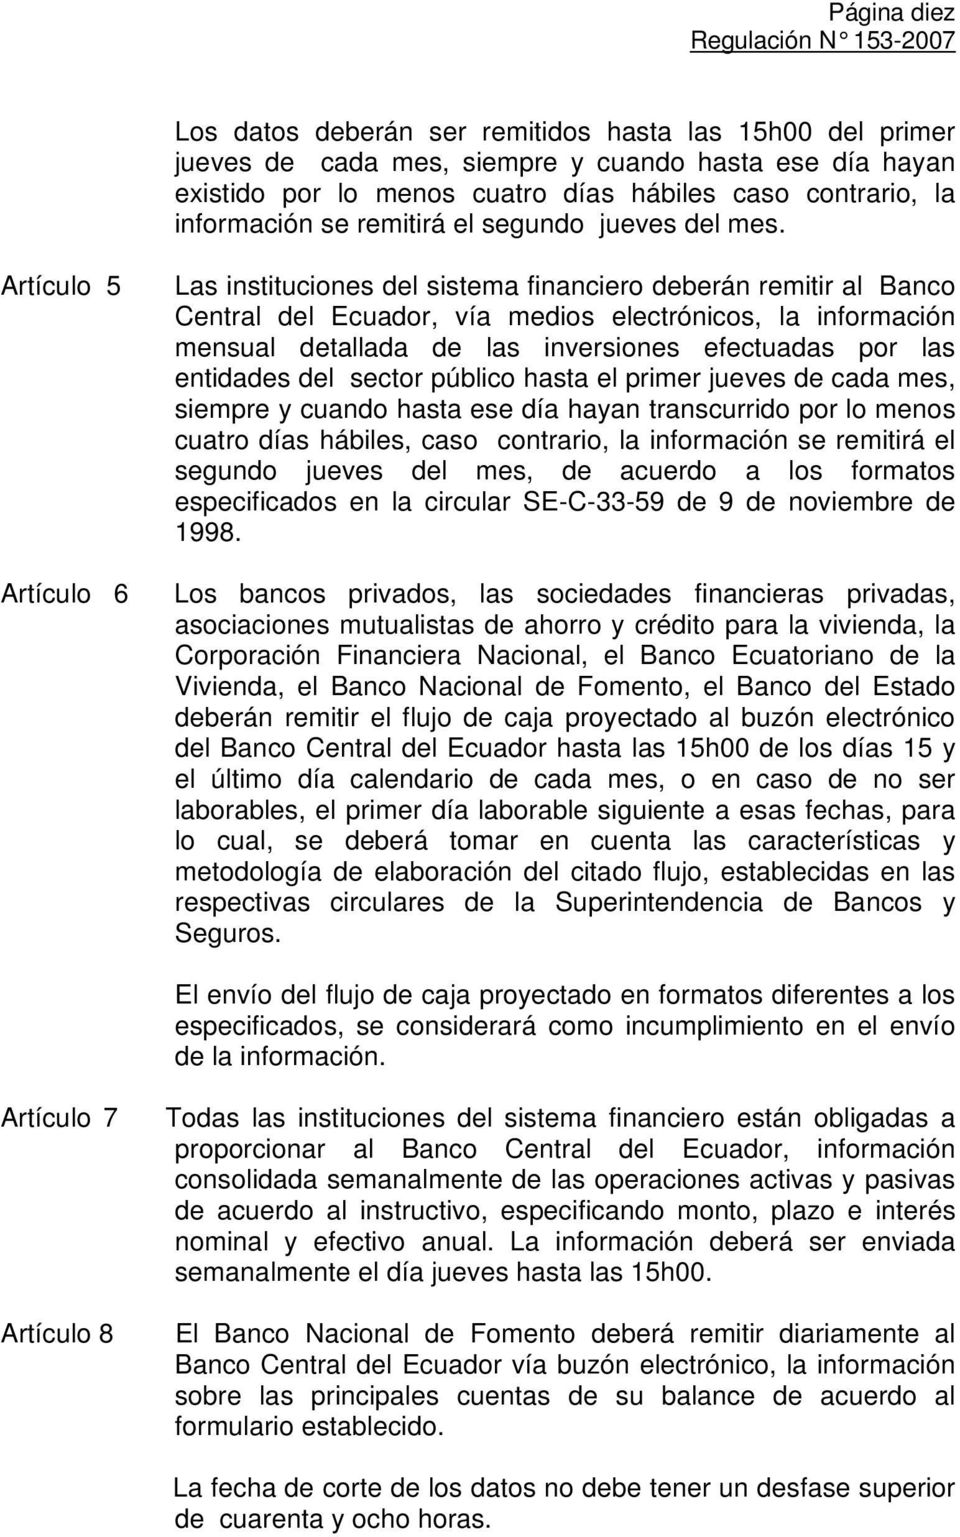 Artículo 5 Artículo 6 Las instituciones del sistema financiero deberán remitir al Banco Central del Ecuador, vía medios electrónicos, la información mensual detallada de las inversiones efectuadas